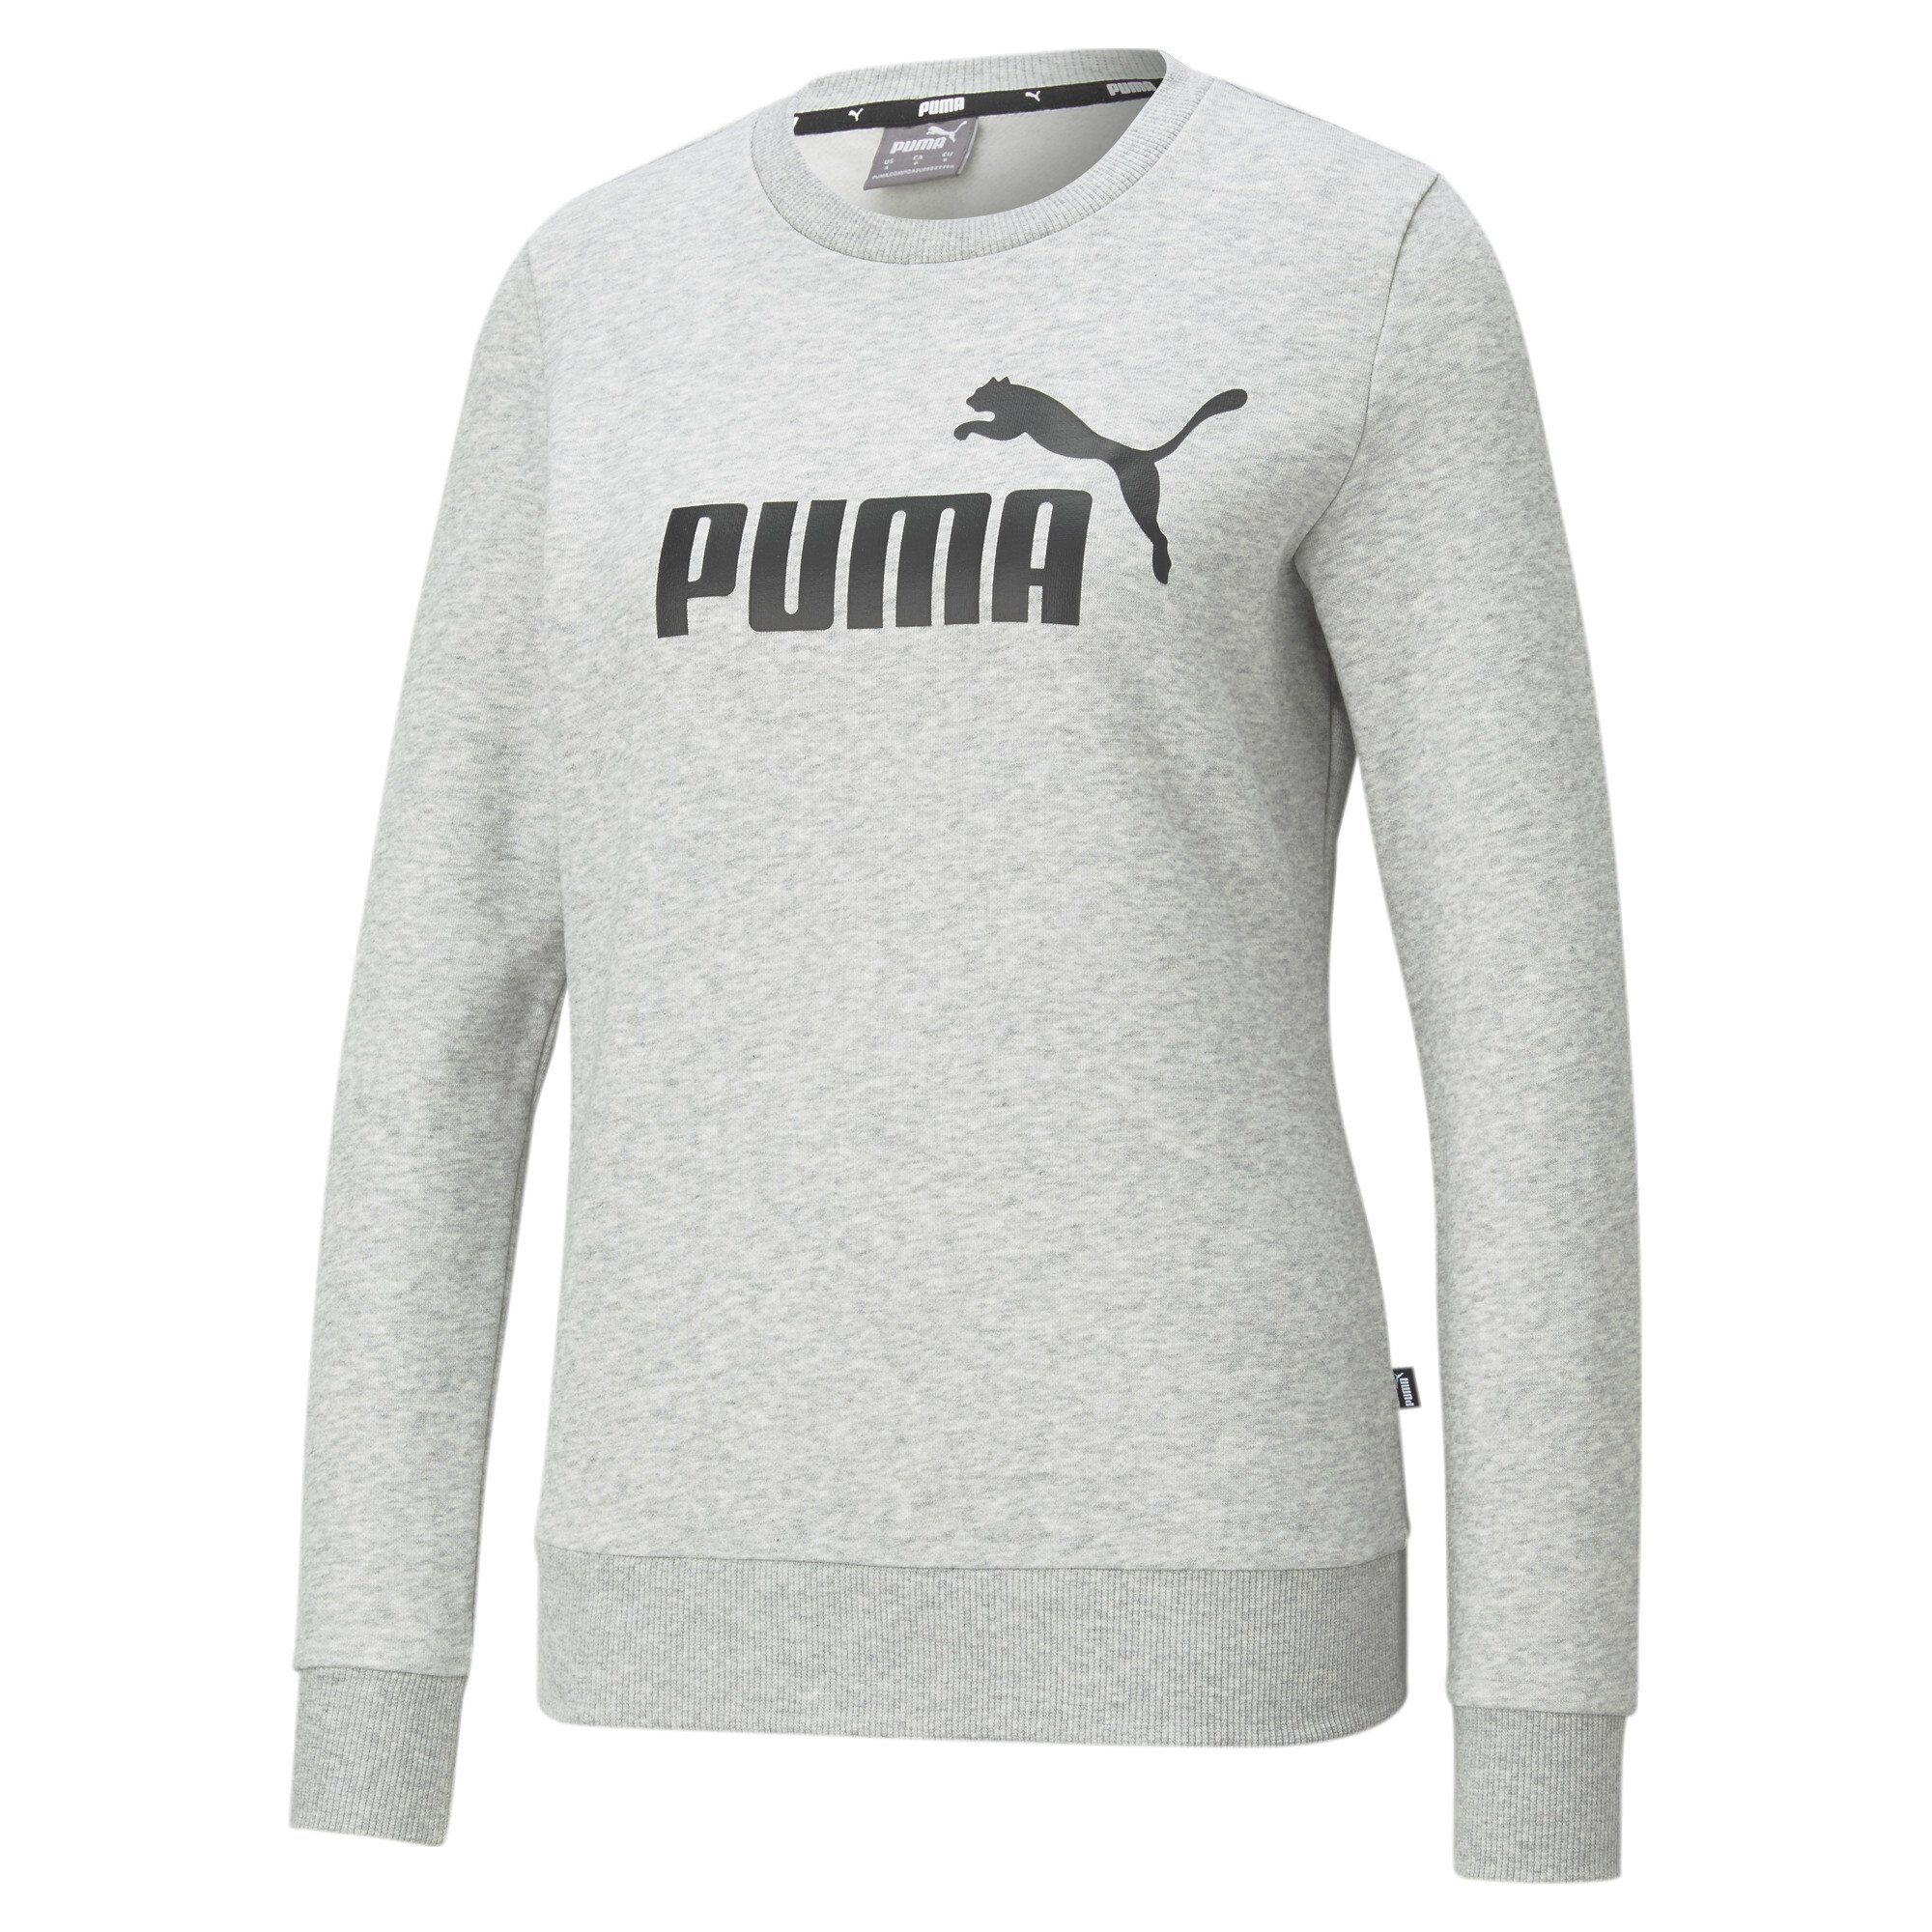 PUMA Pullover online kaufen | OTTO